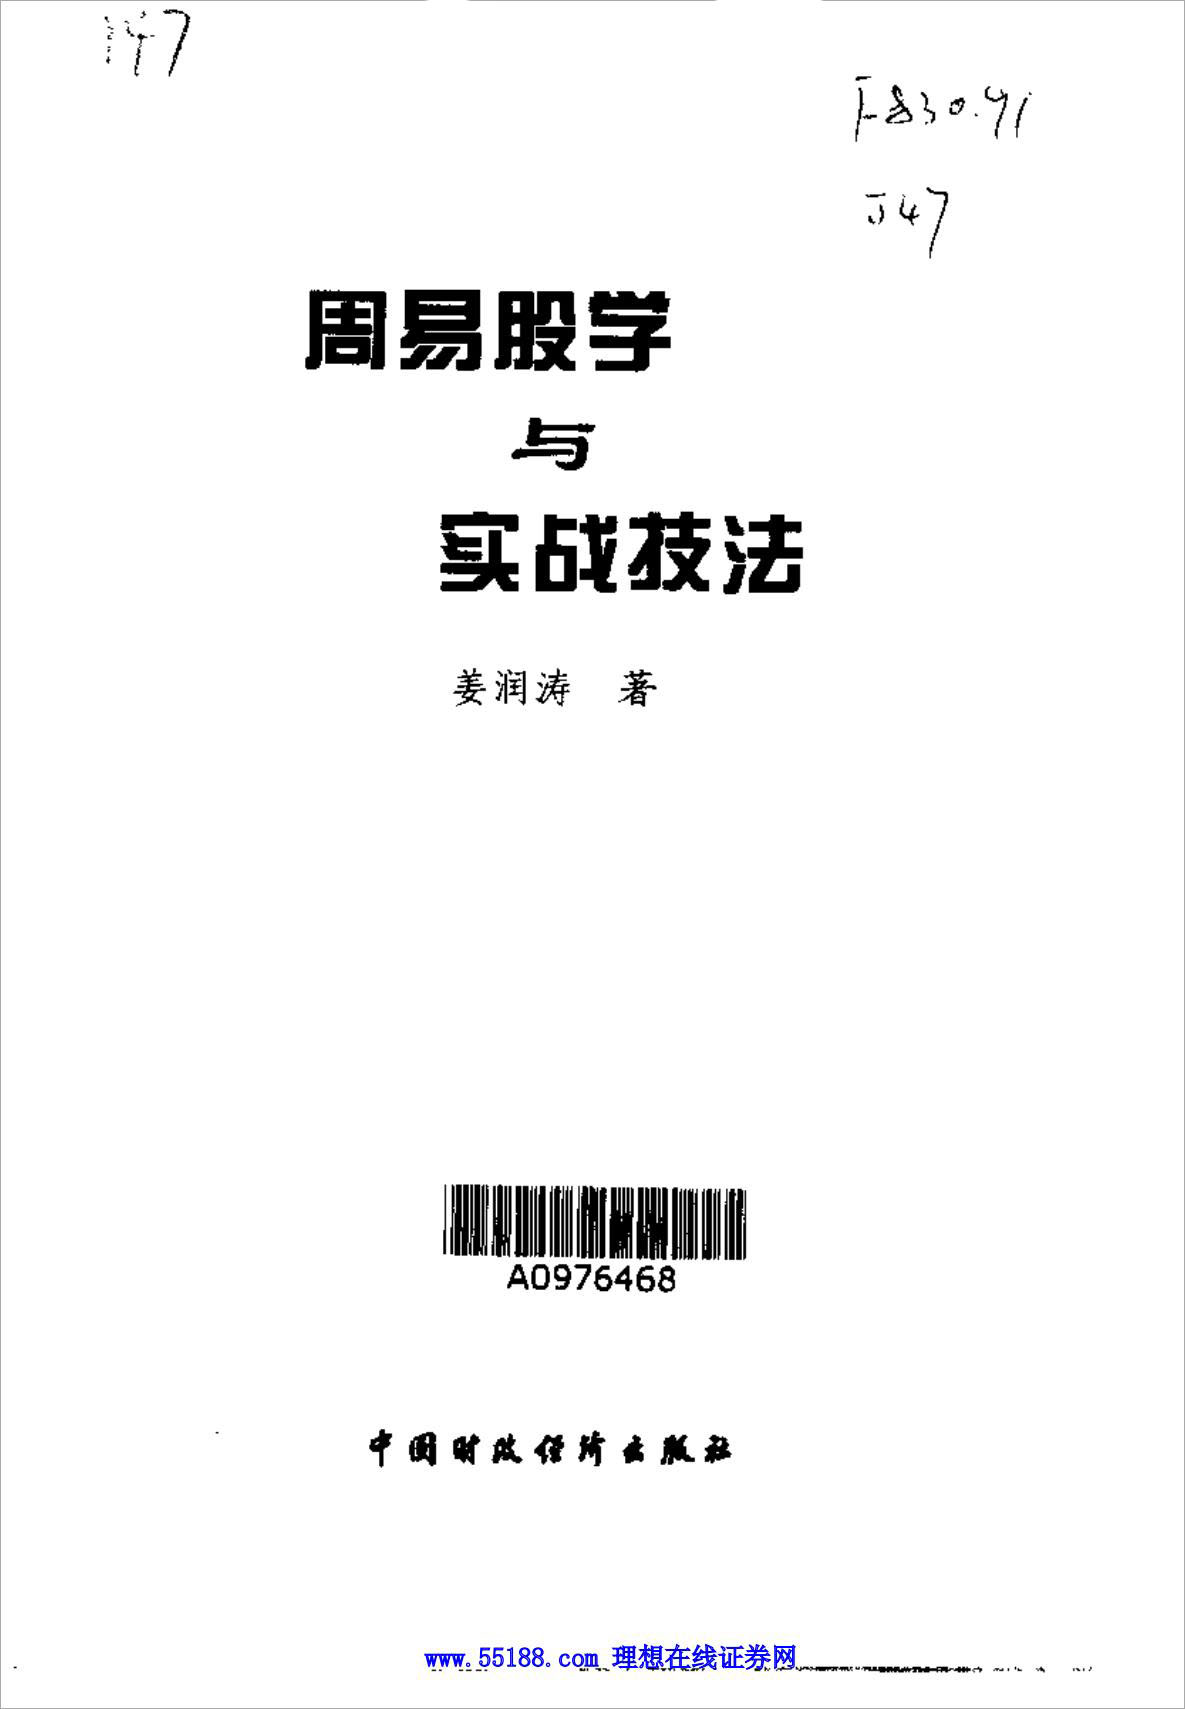 周易股学与实战技法.pdf